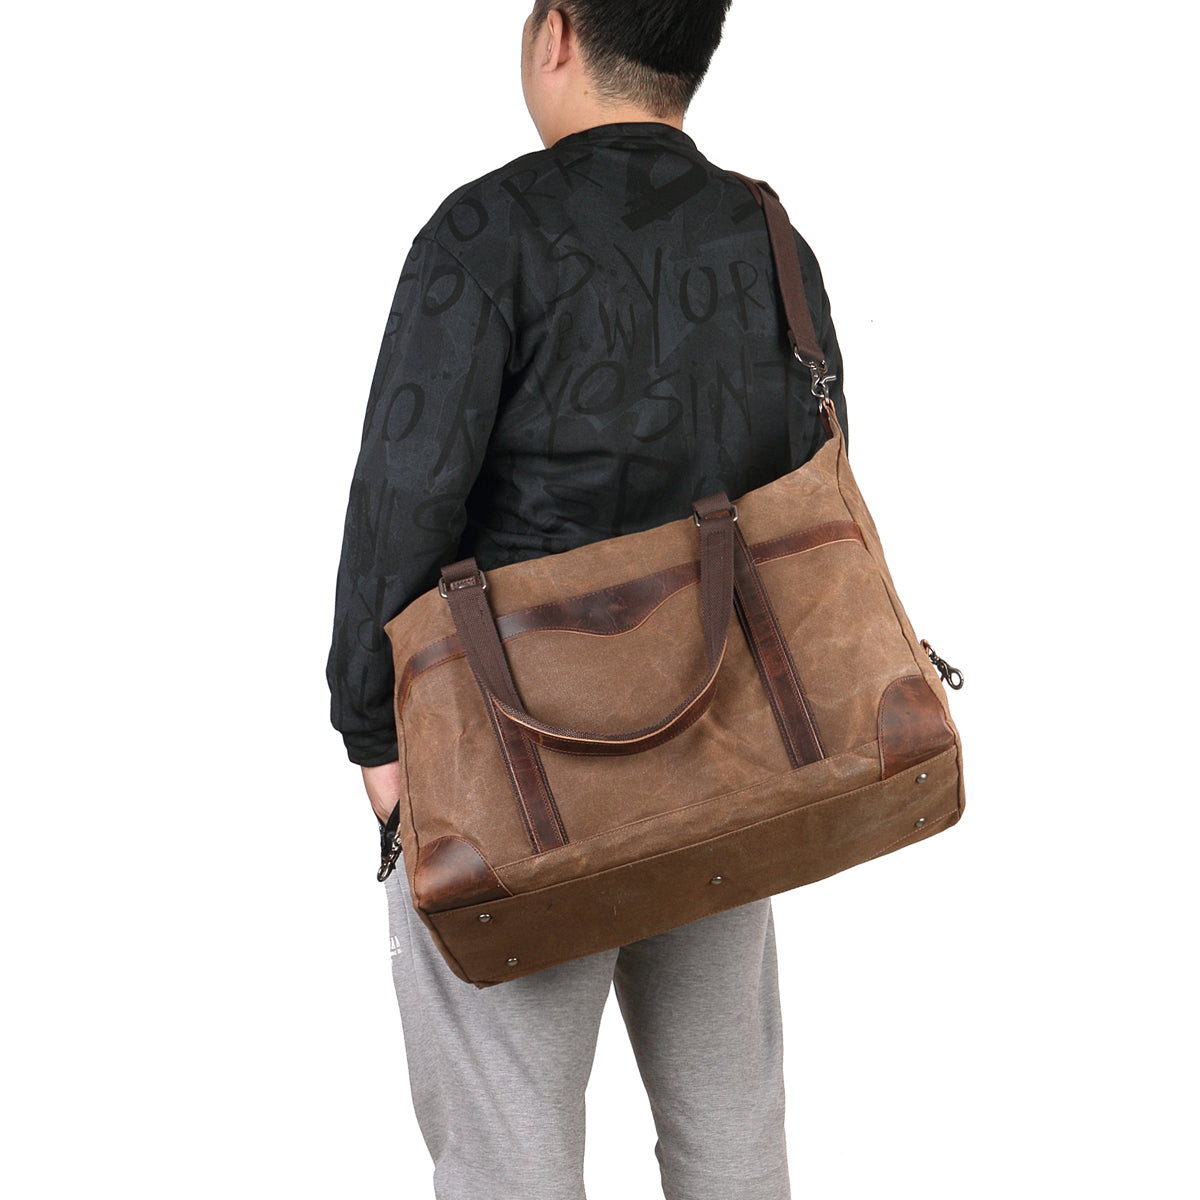 homme portant un sac de voyage toile et cuir couleur café